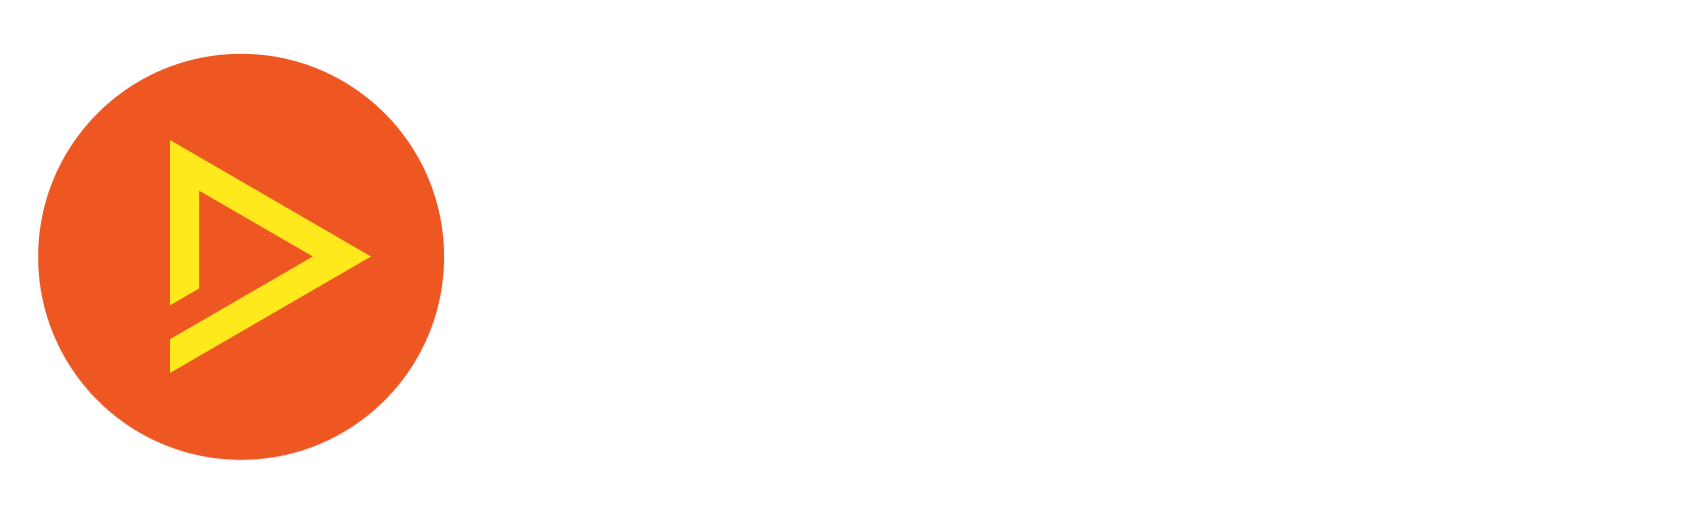 TRIFFT Loyalty Cloud logo